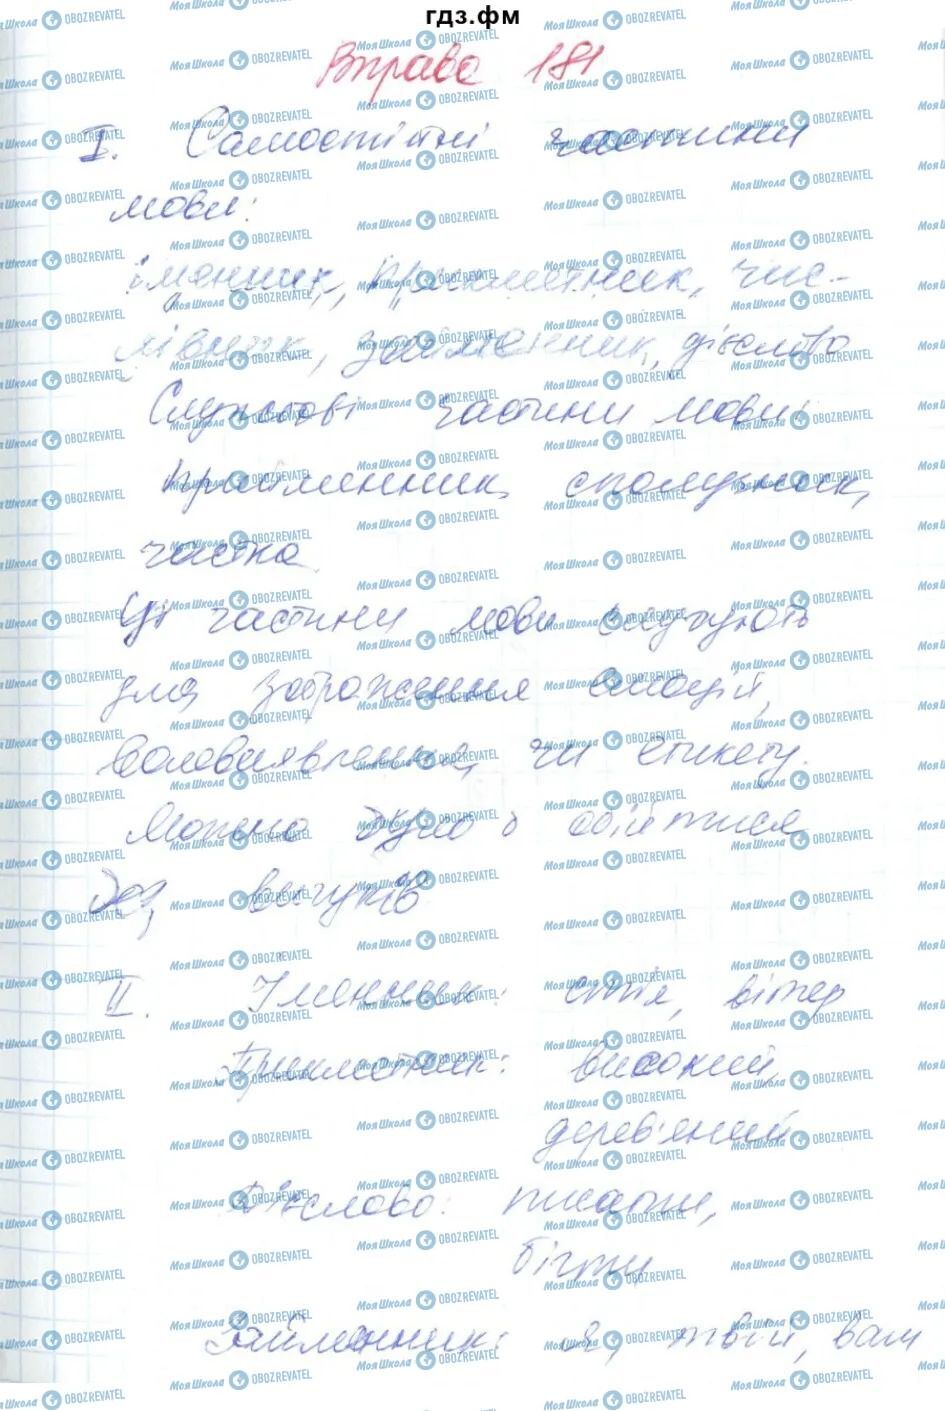 ГДЗ Українська мова 6 клас сторінка 181